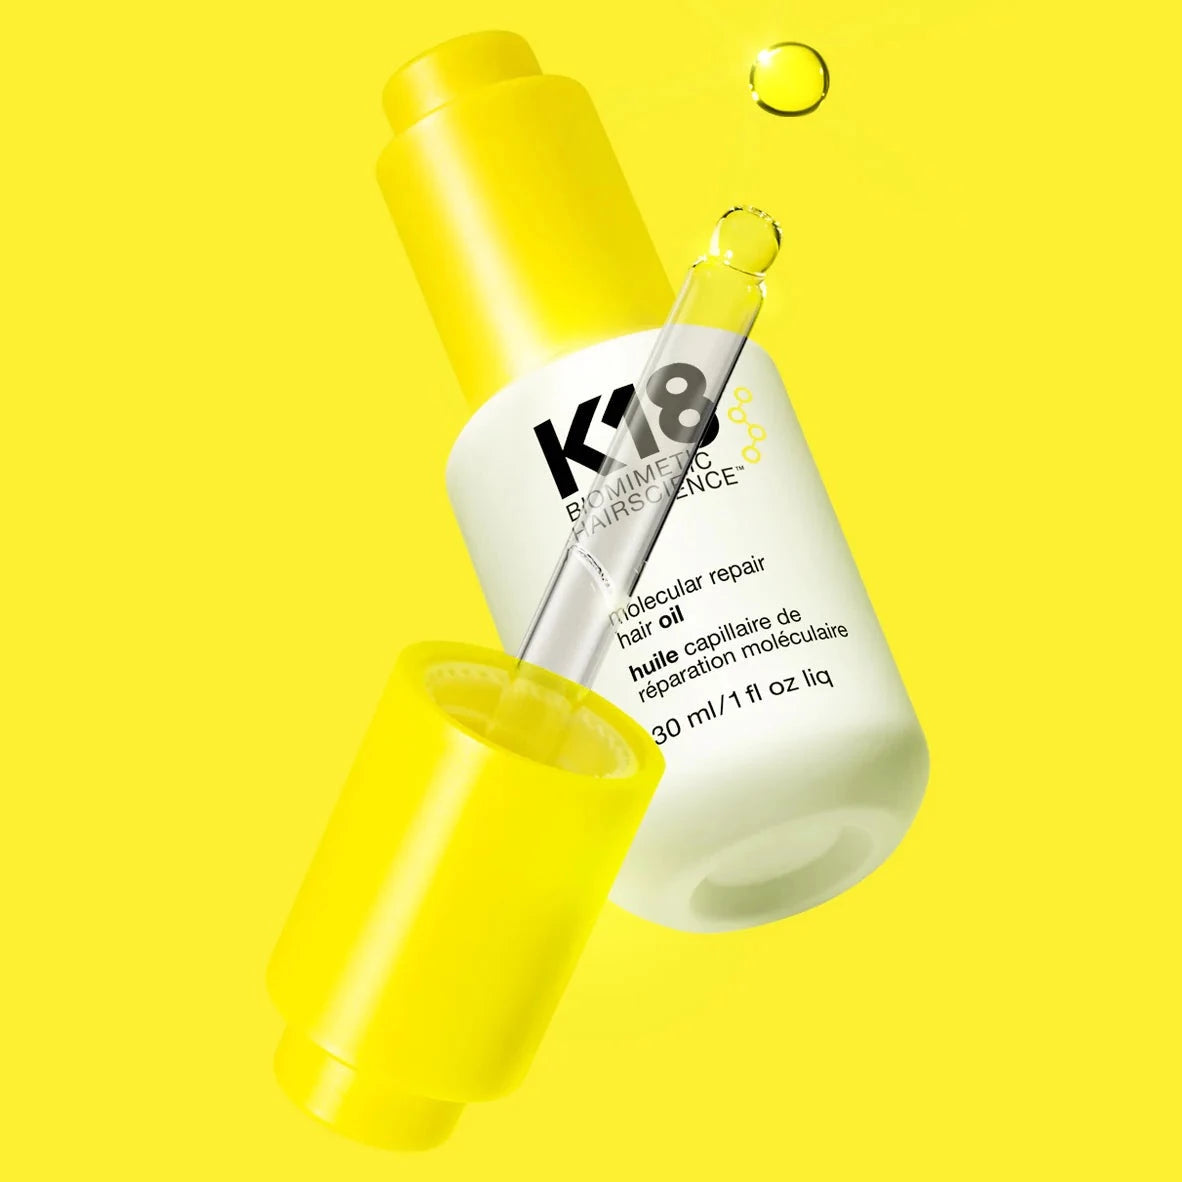 K18 Molecular Repair Hair Oil - 30mL